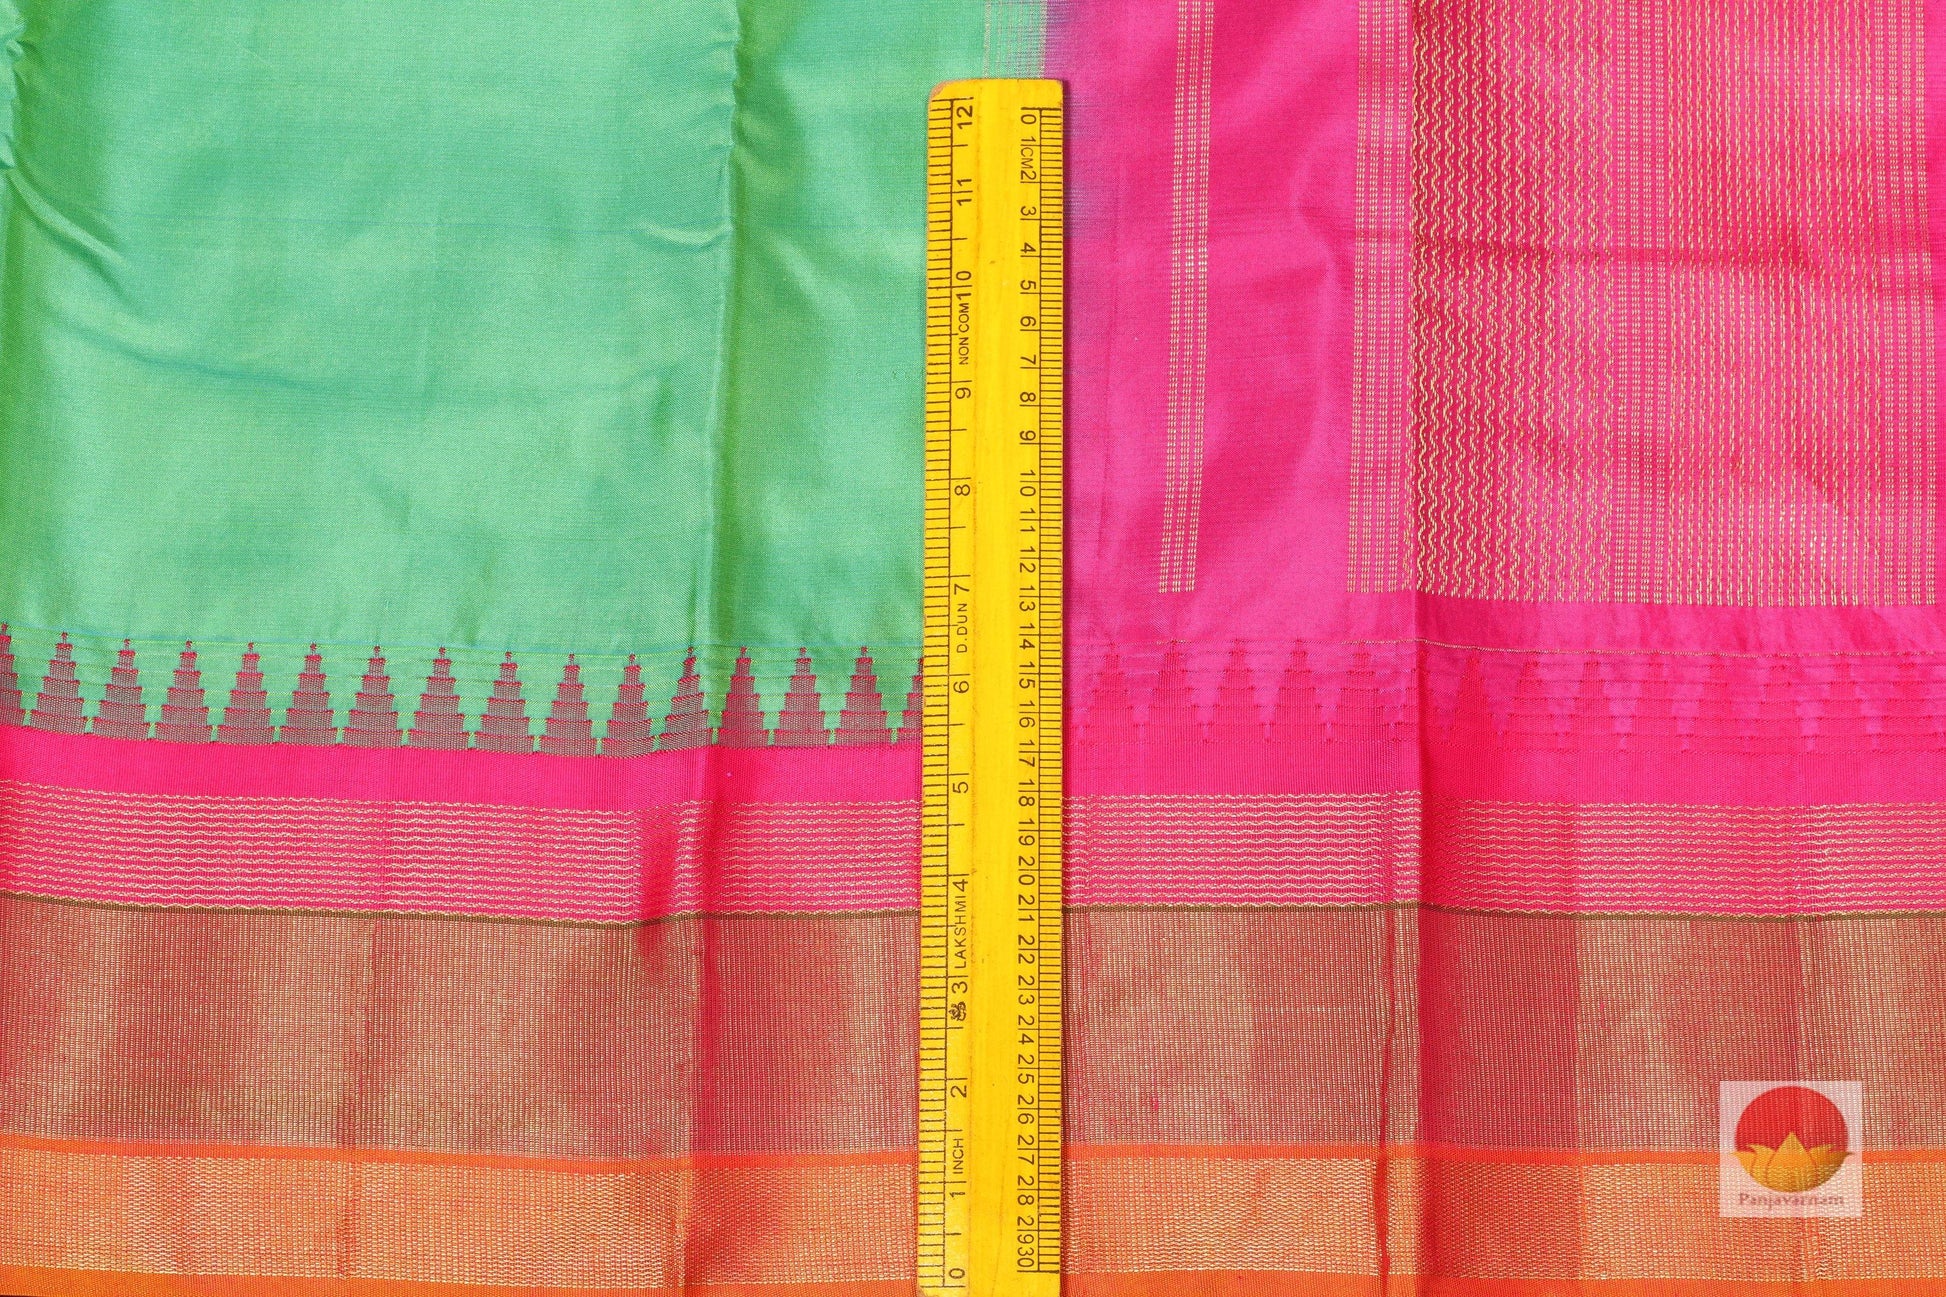 Temple Border Handwoven Pure Silk Kanjivaram Saree - PV S9 Archives - Silk Sari - Panjavarnam